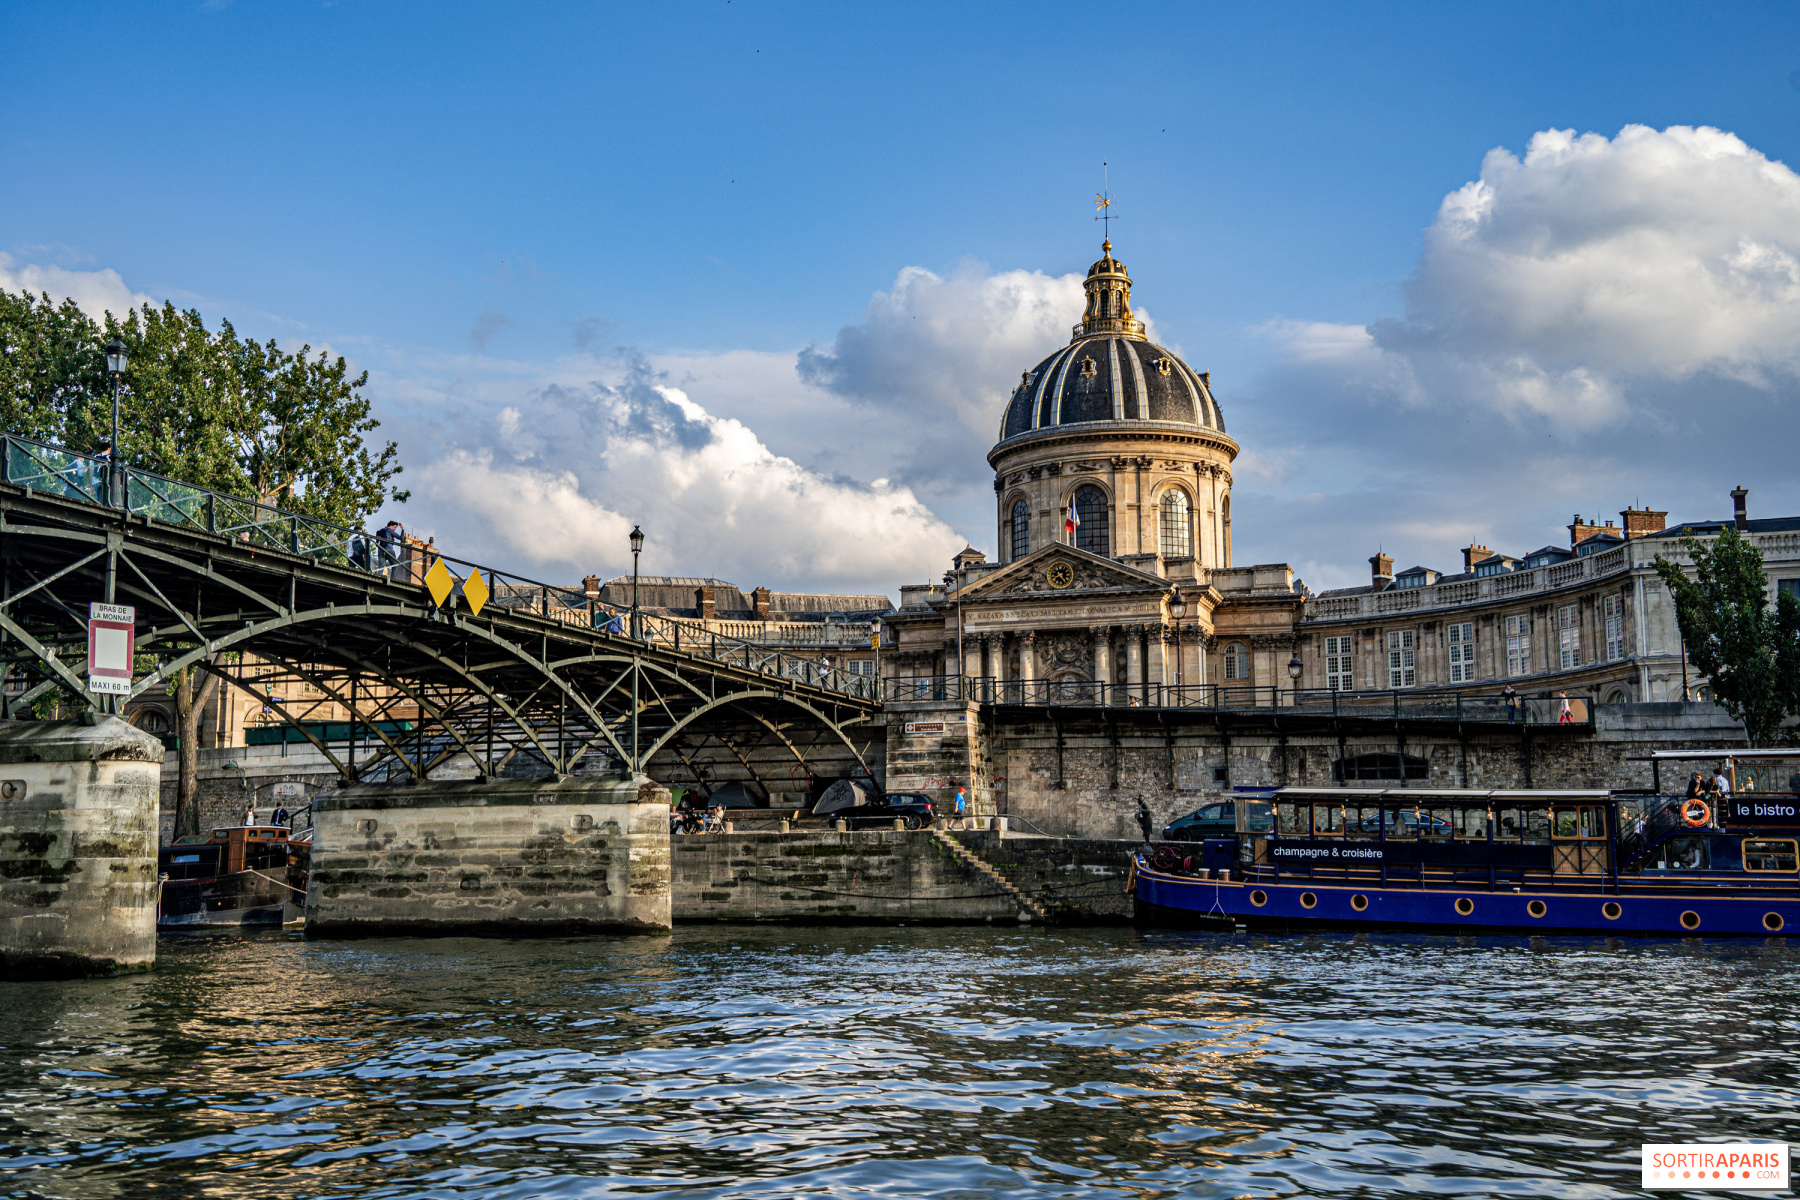 The Pont des Arts, Paris » Norton Simon Museum